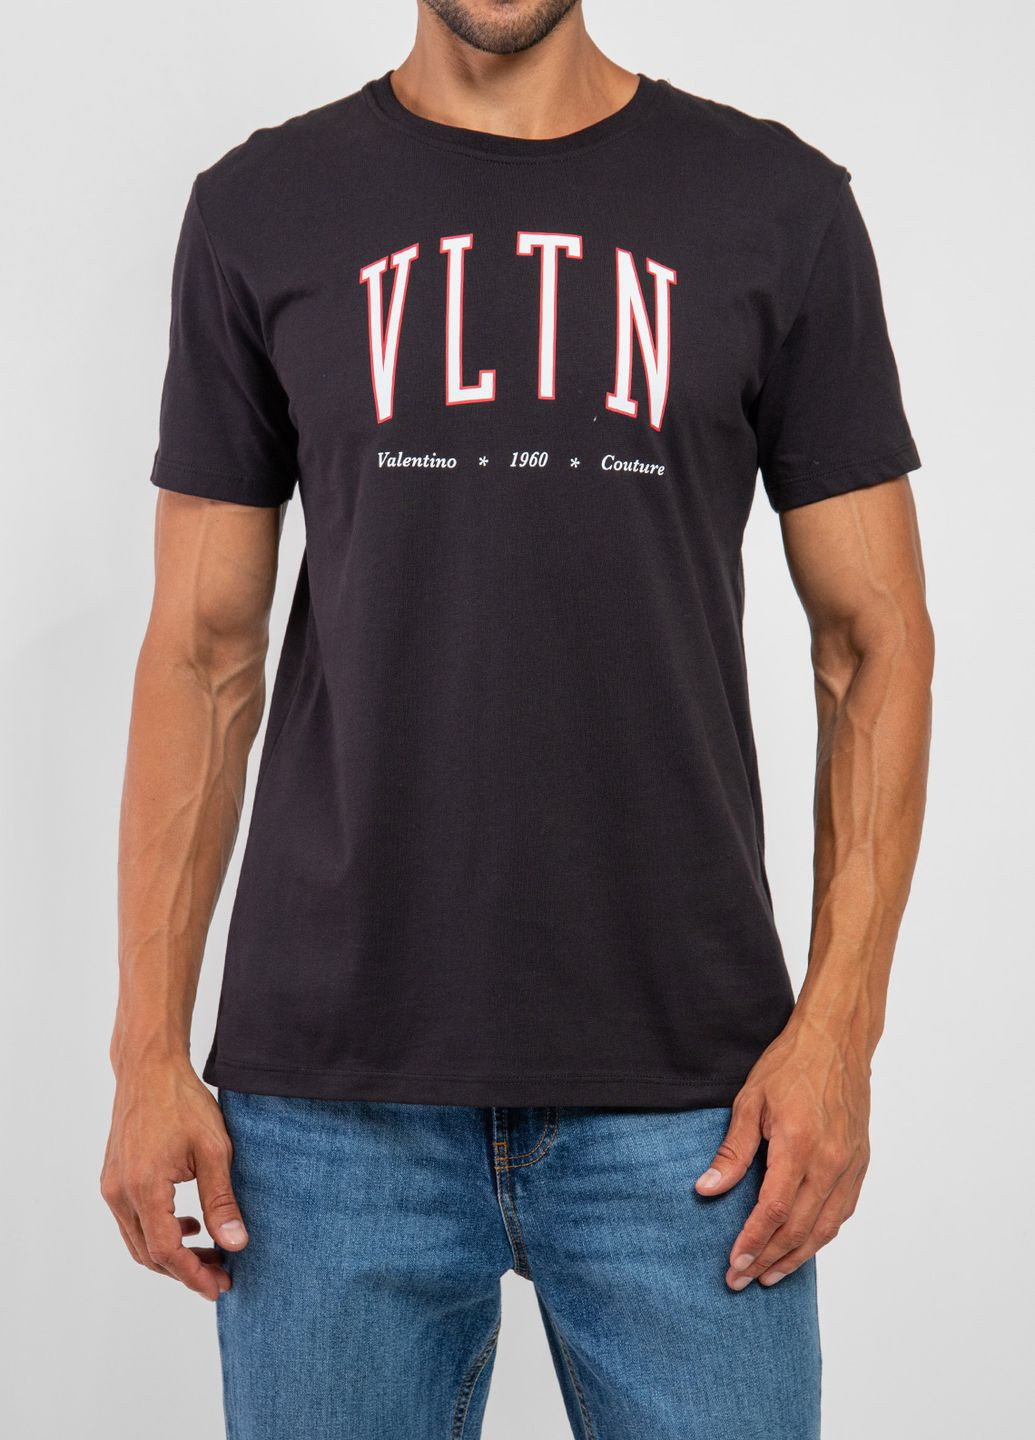 Черная черная хлопковая футболка с логотипом Valentino